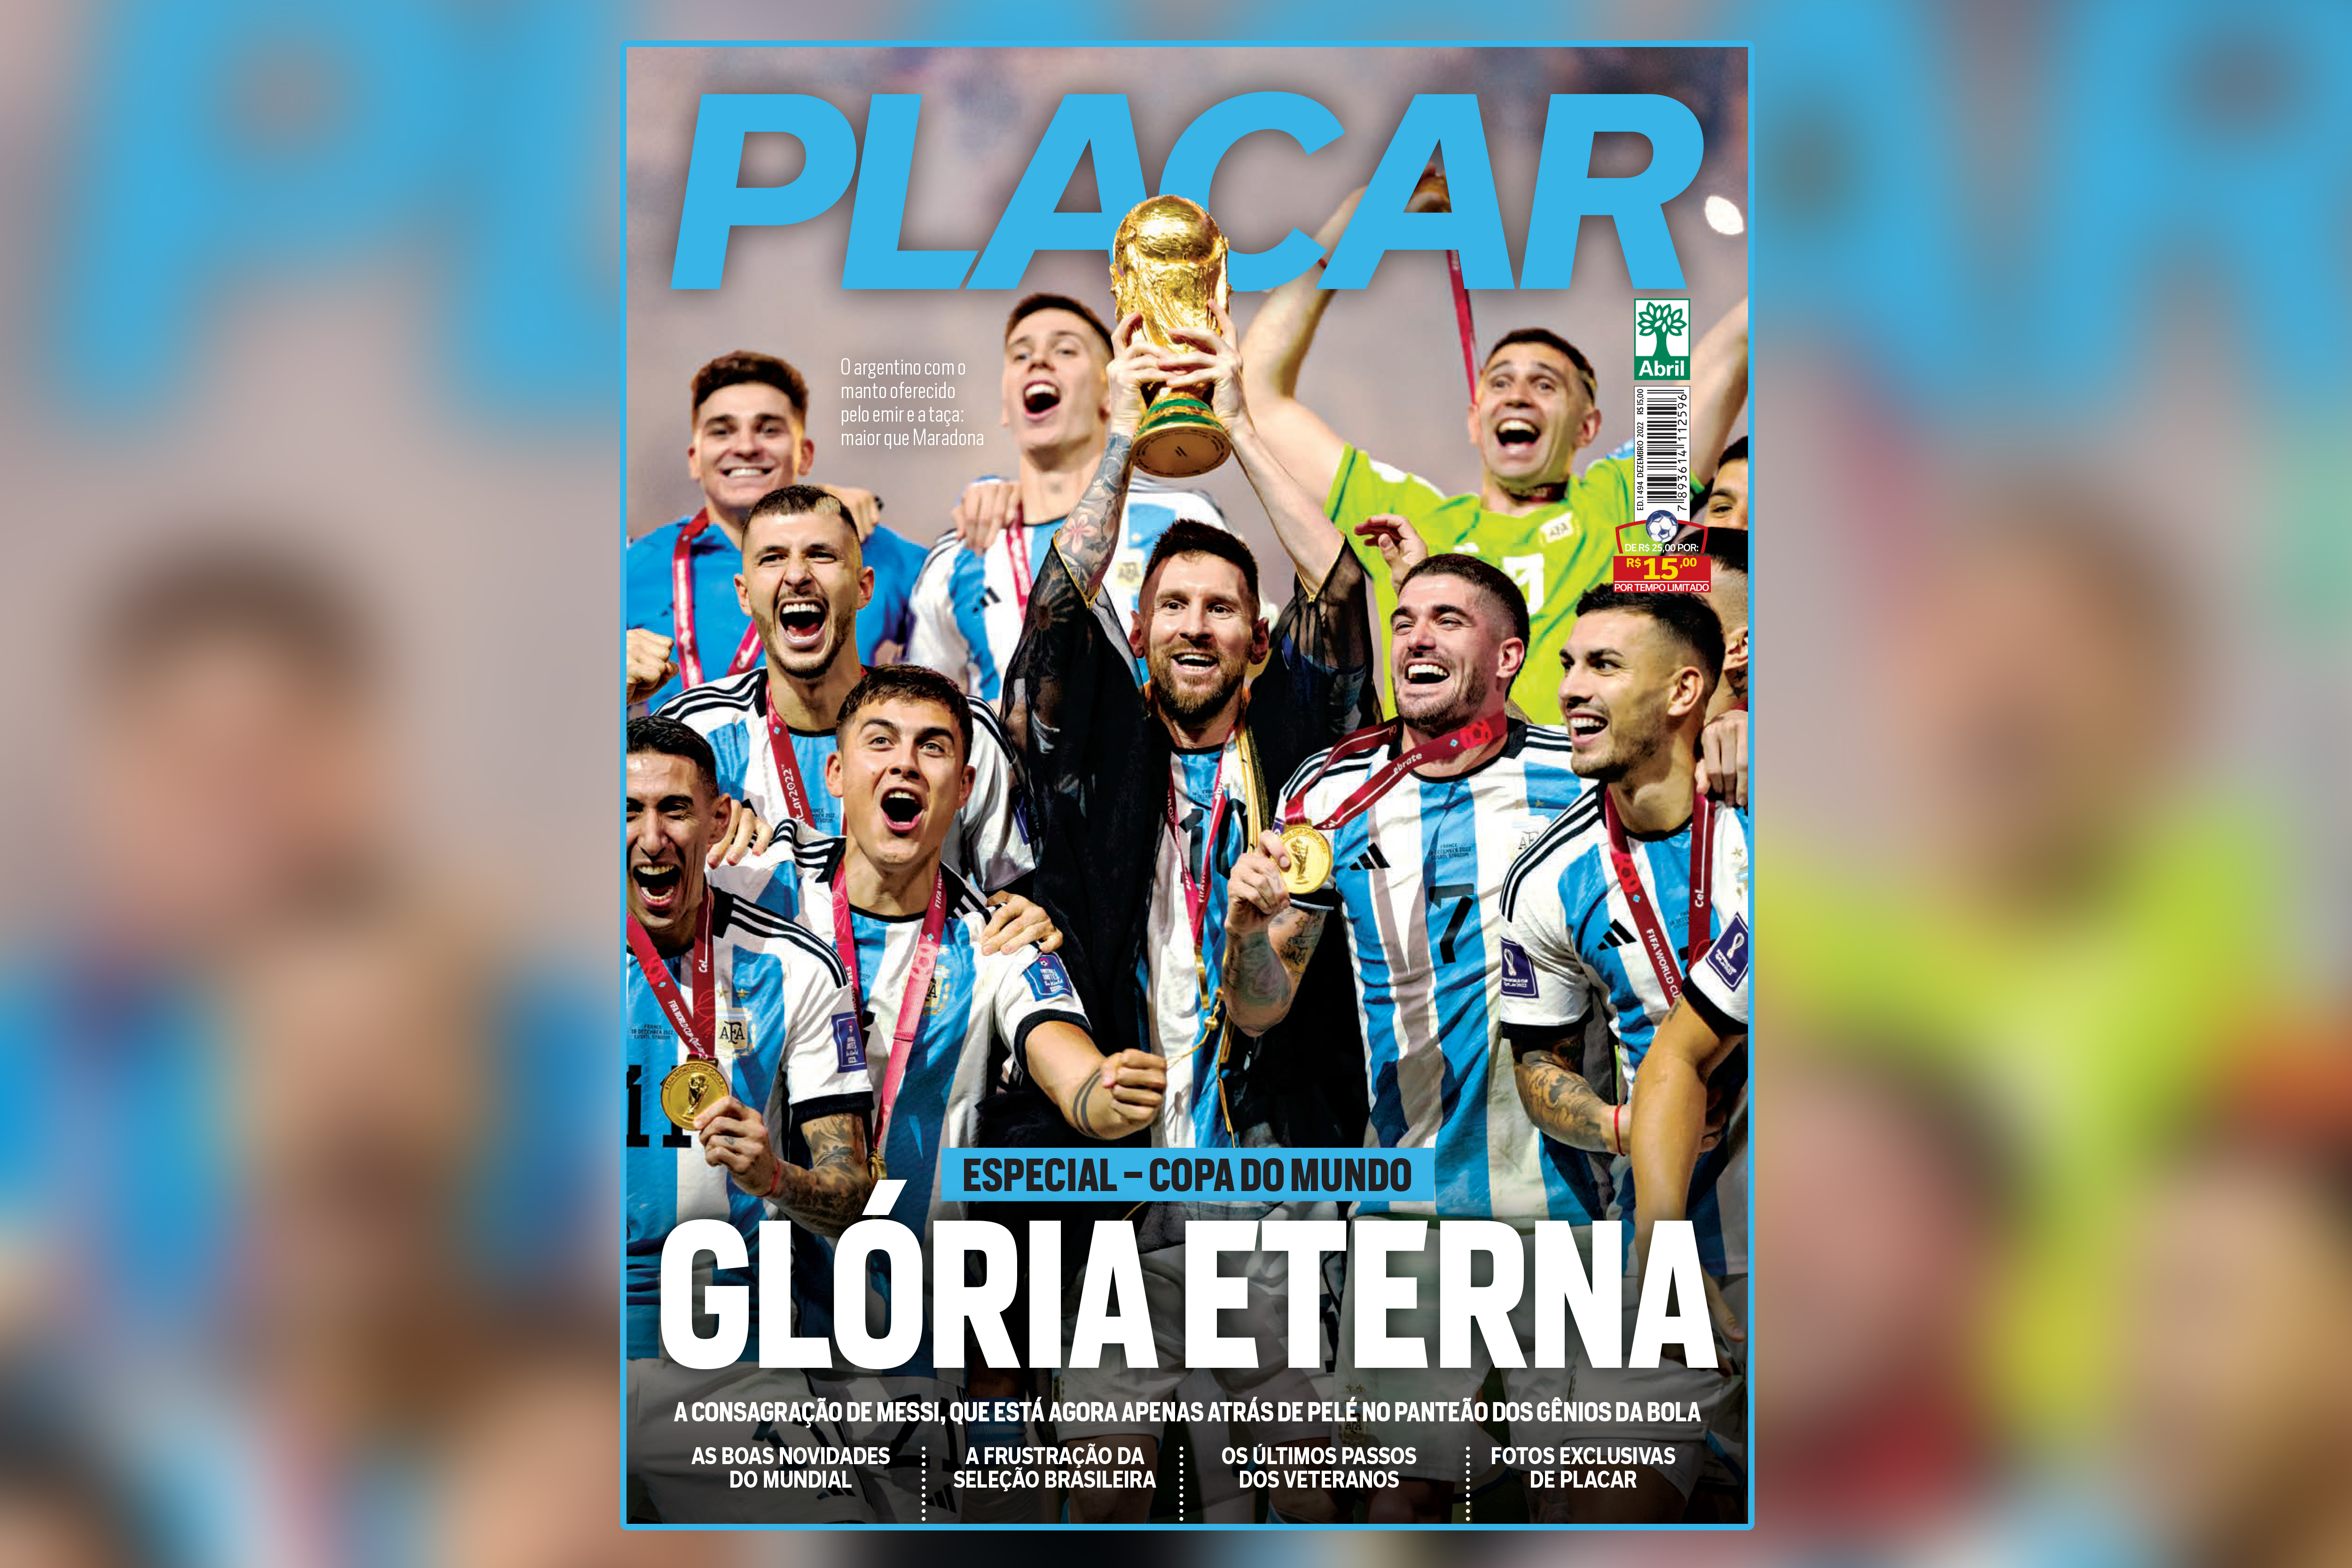 PLACAR lança o guia da Copa do Mundo de 2022 - Placar - O futebol